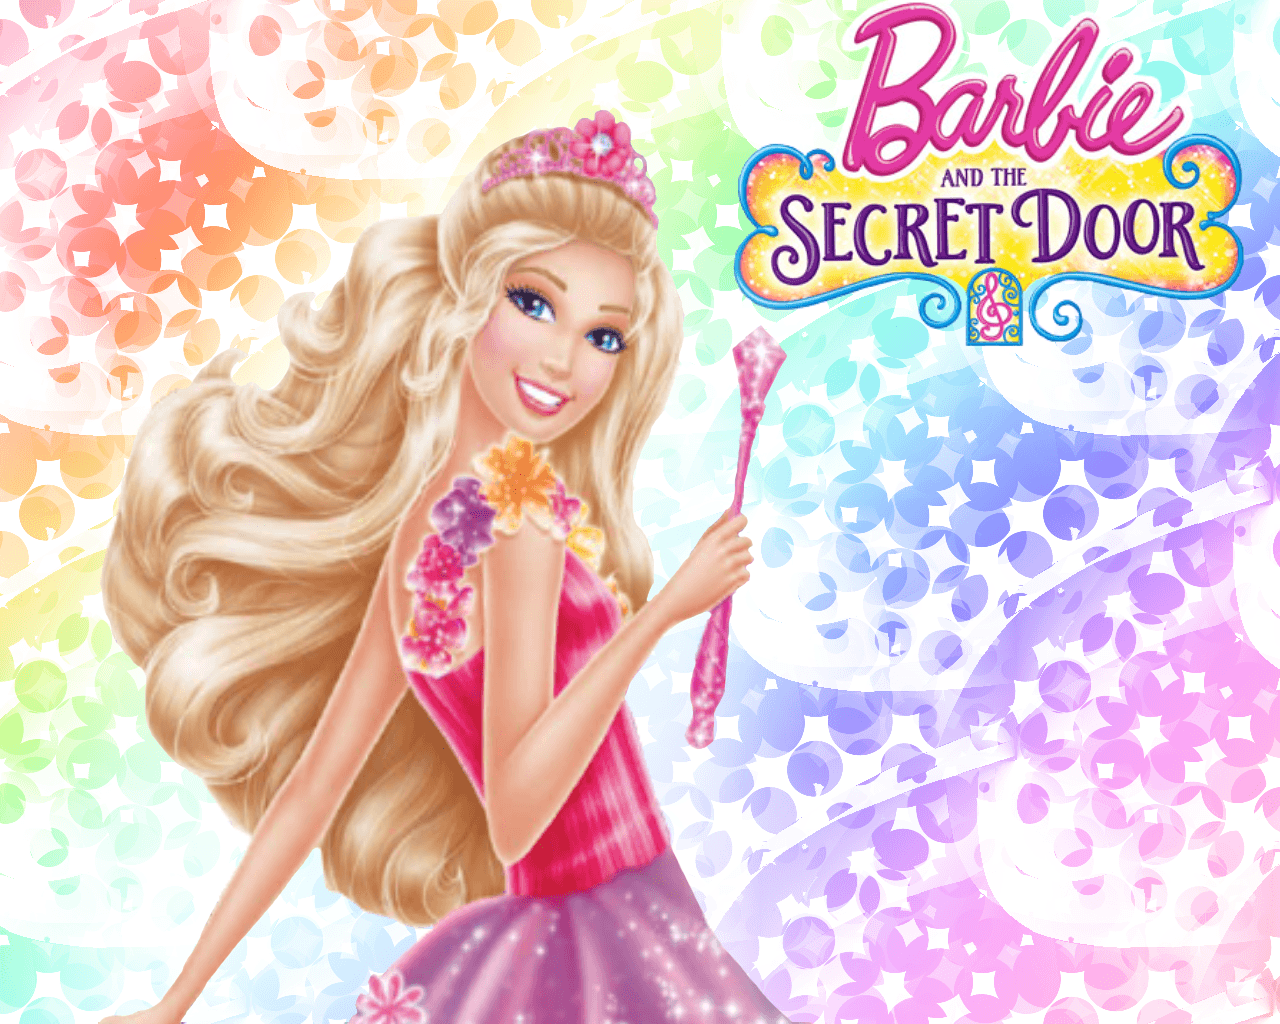 Barbie and the Secret Door Wallpaper .com